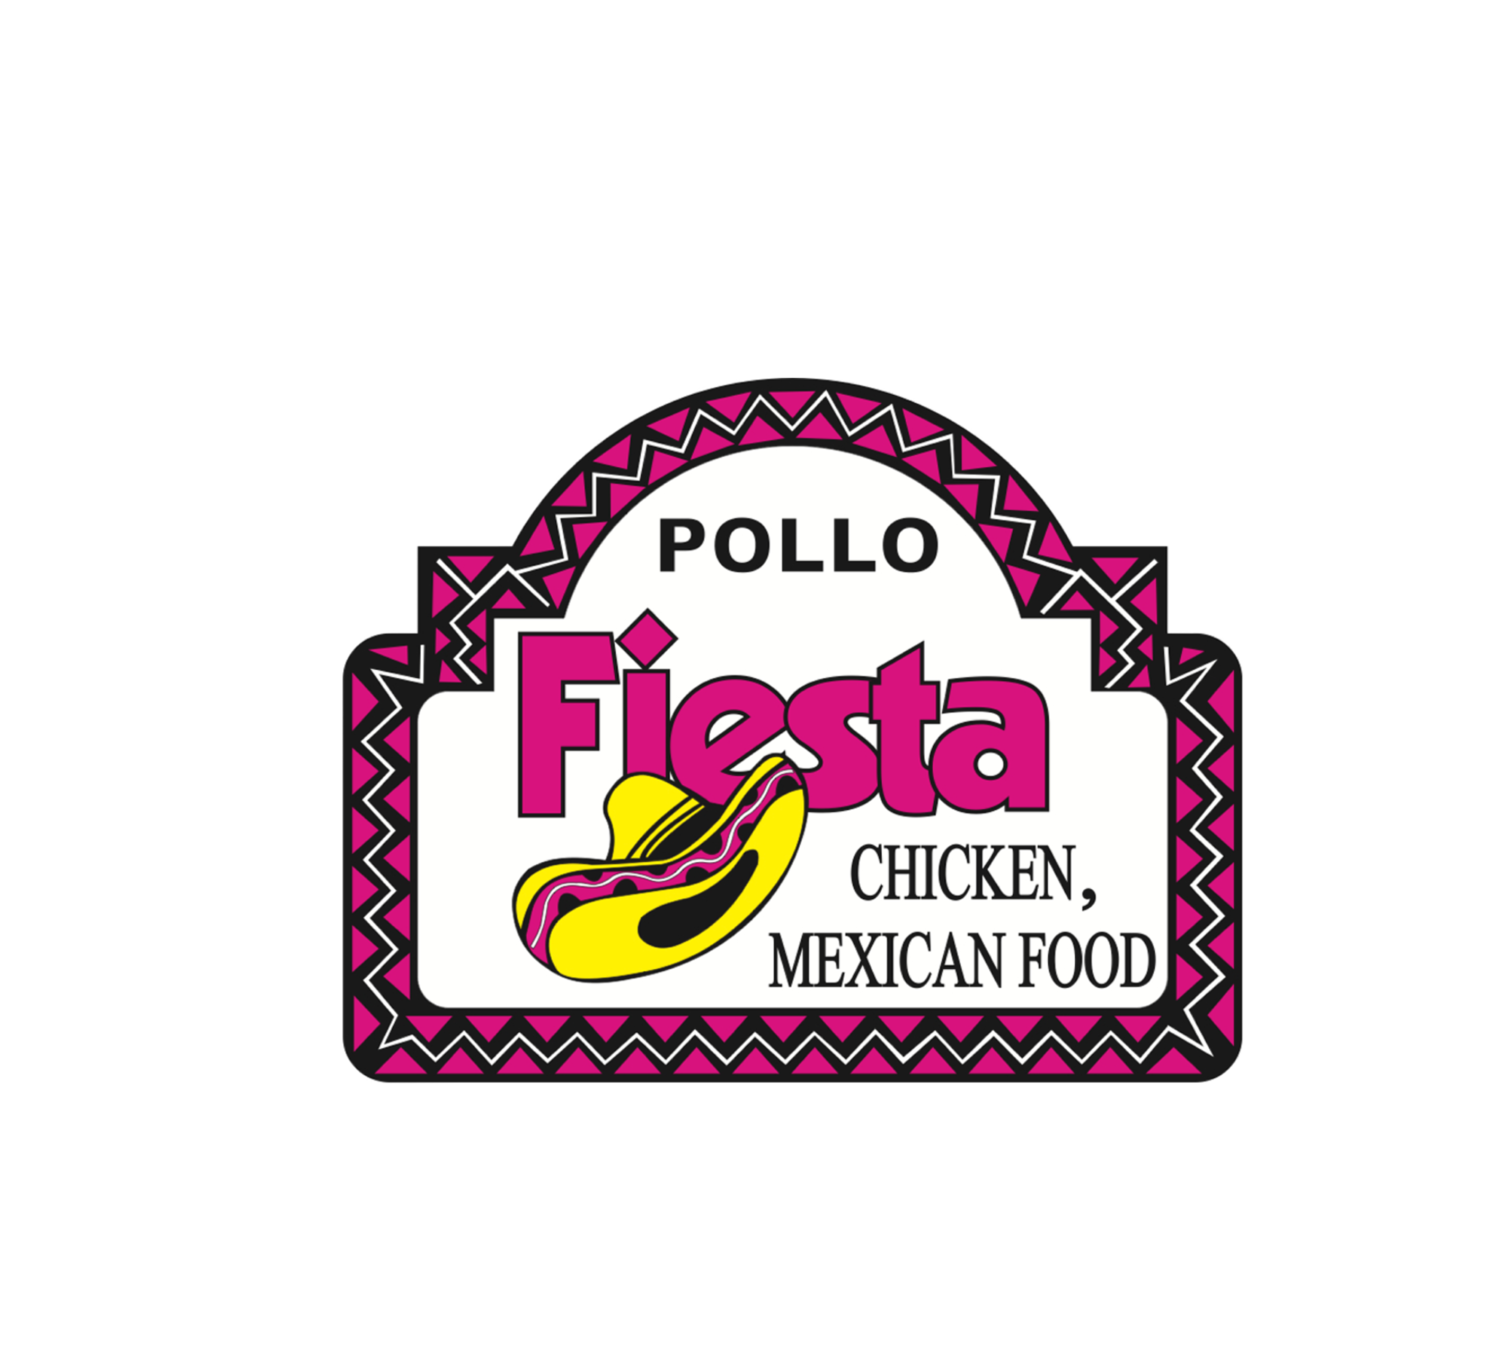  Pollo Fiesta